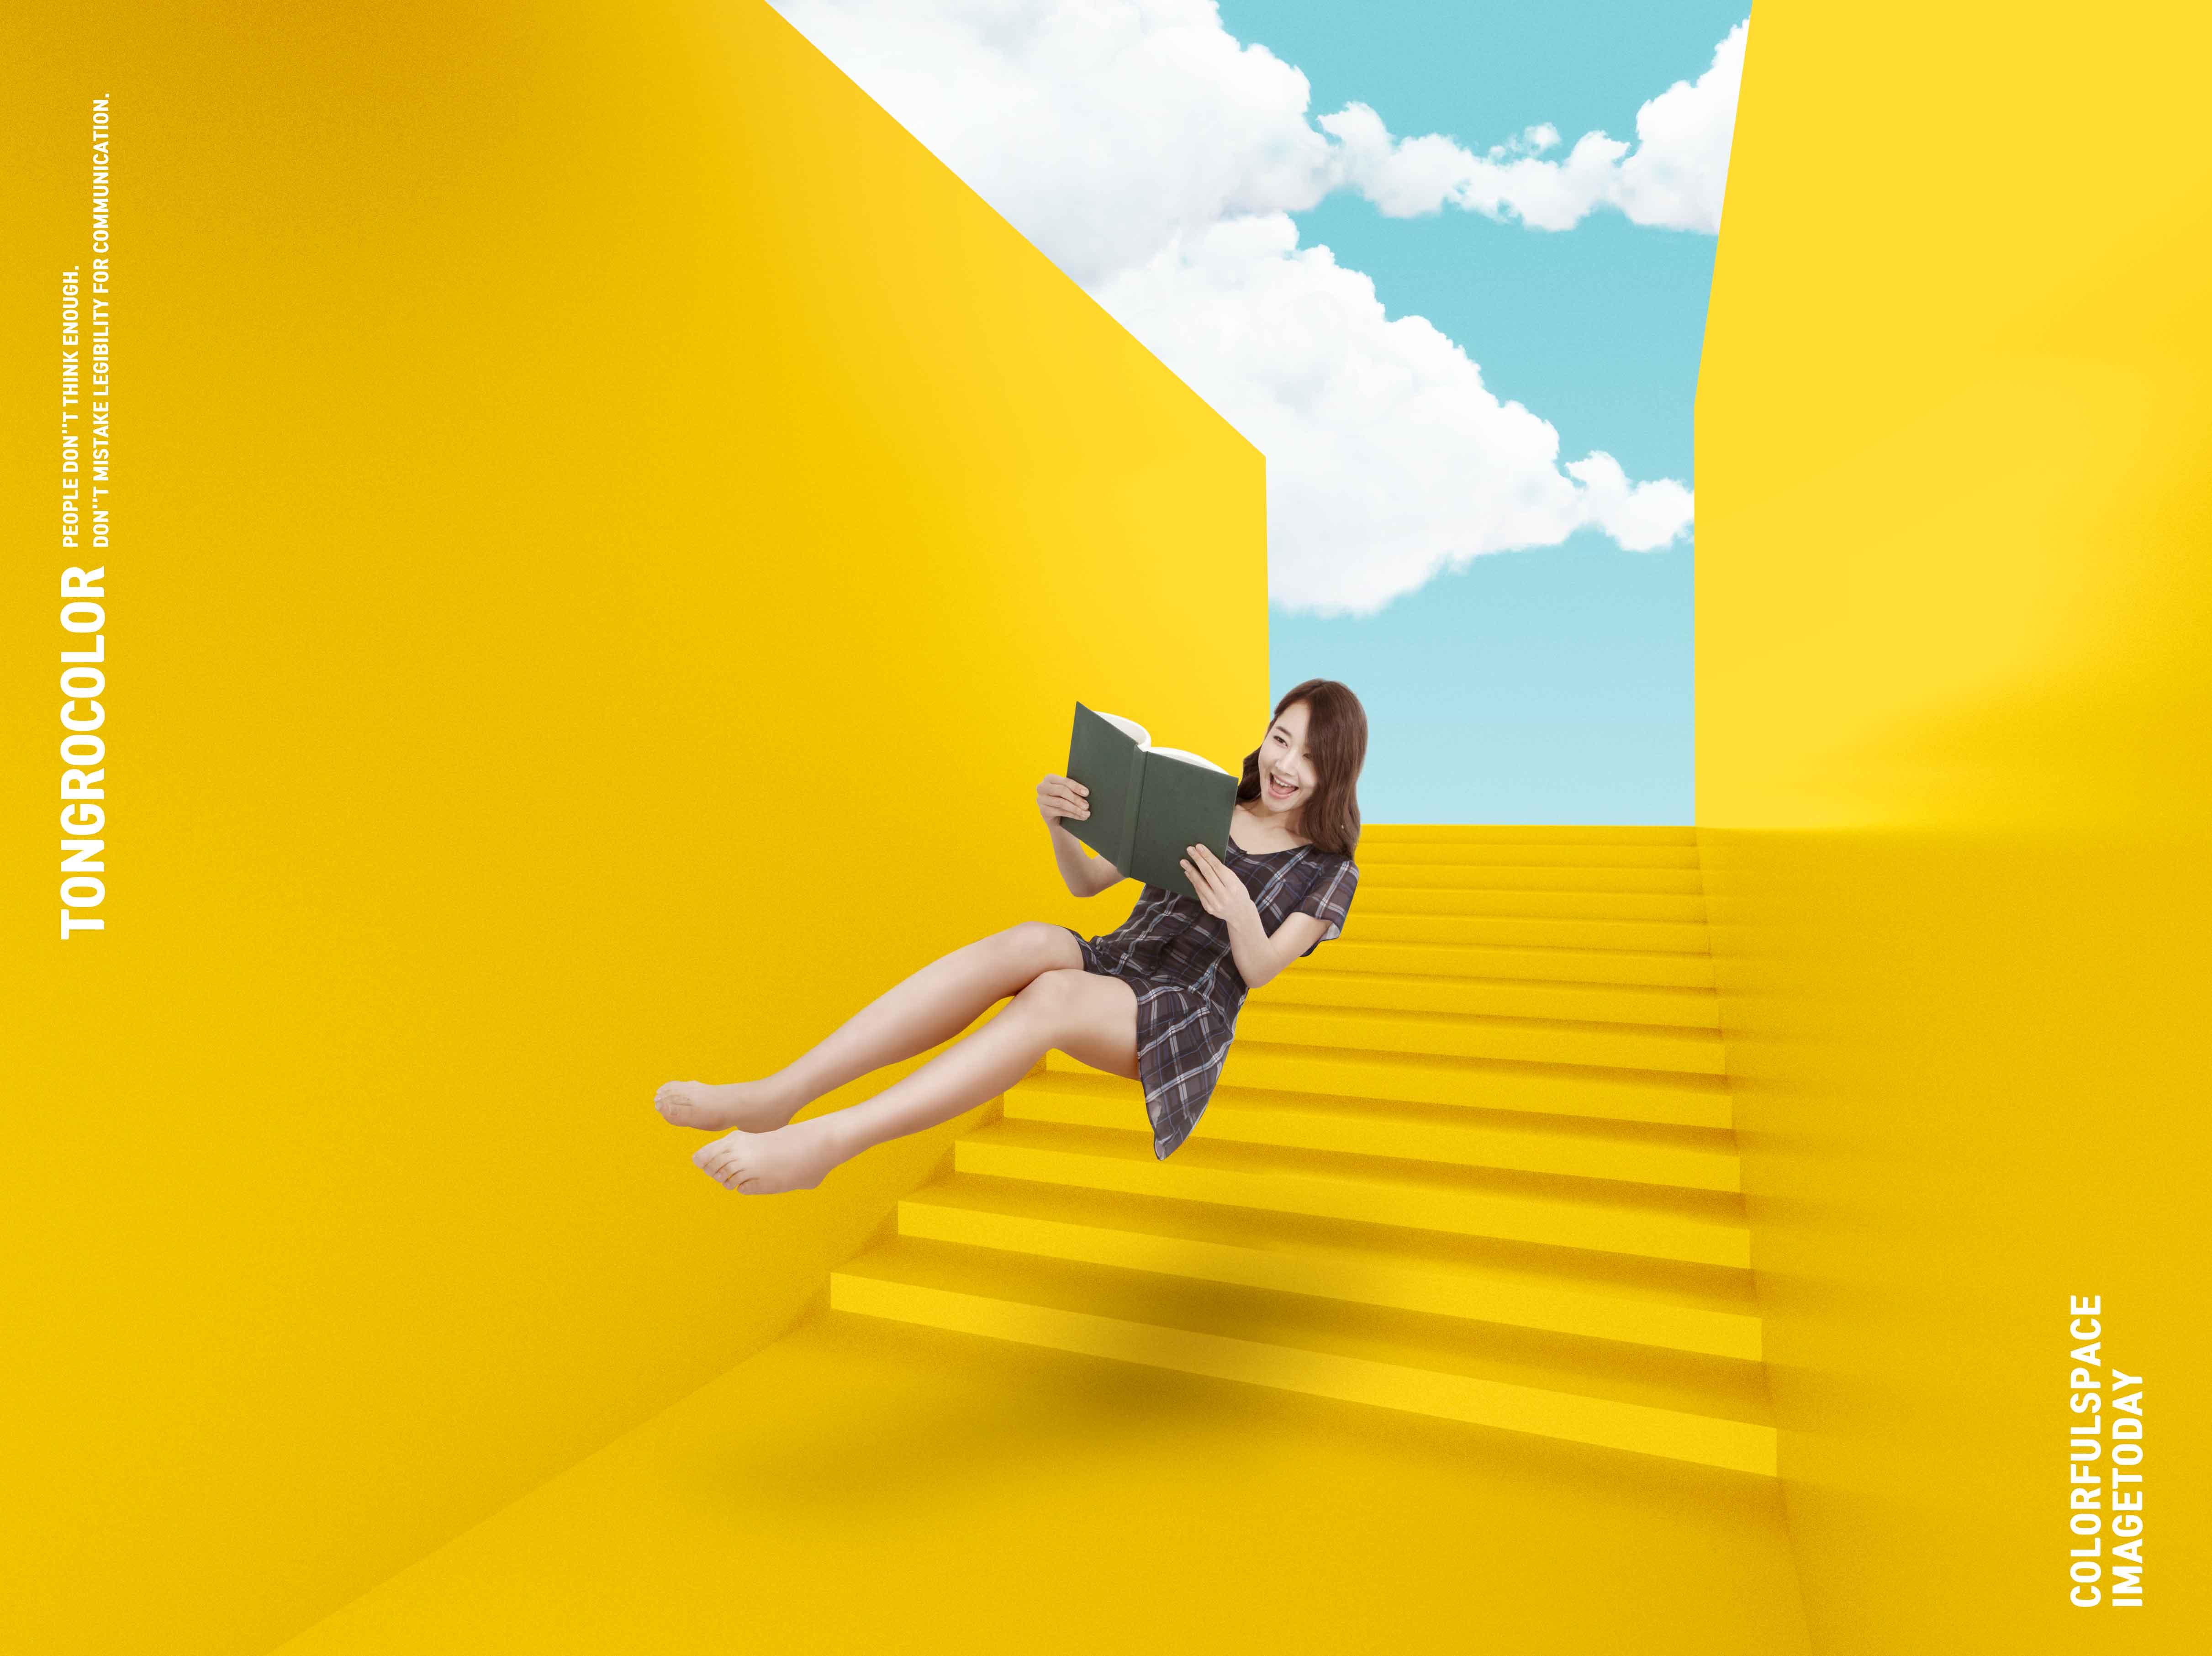 黄色配色抽象楼梯空间海报PSD素材蚂蚁素材精选psd素材插图